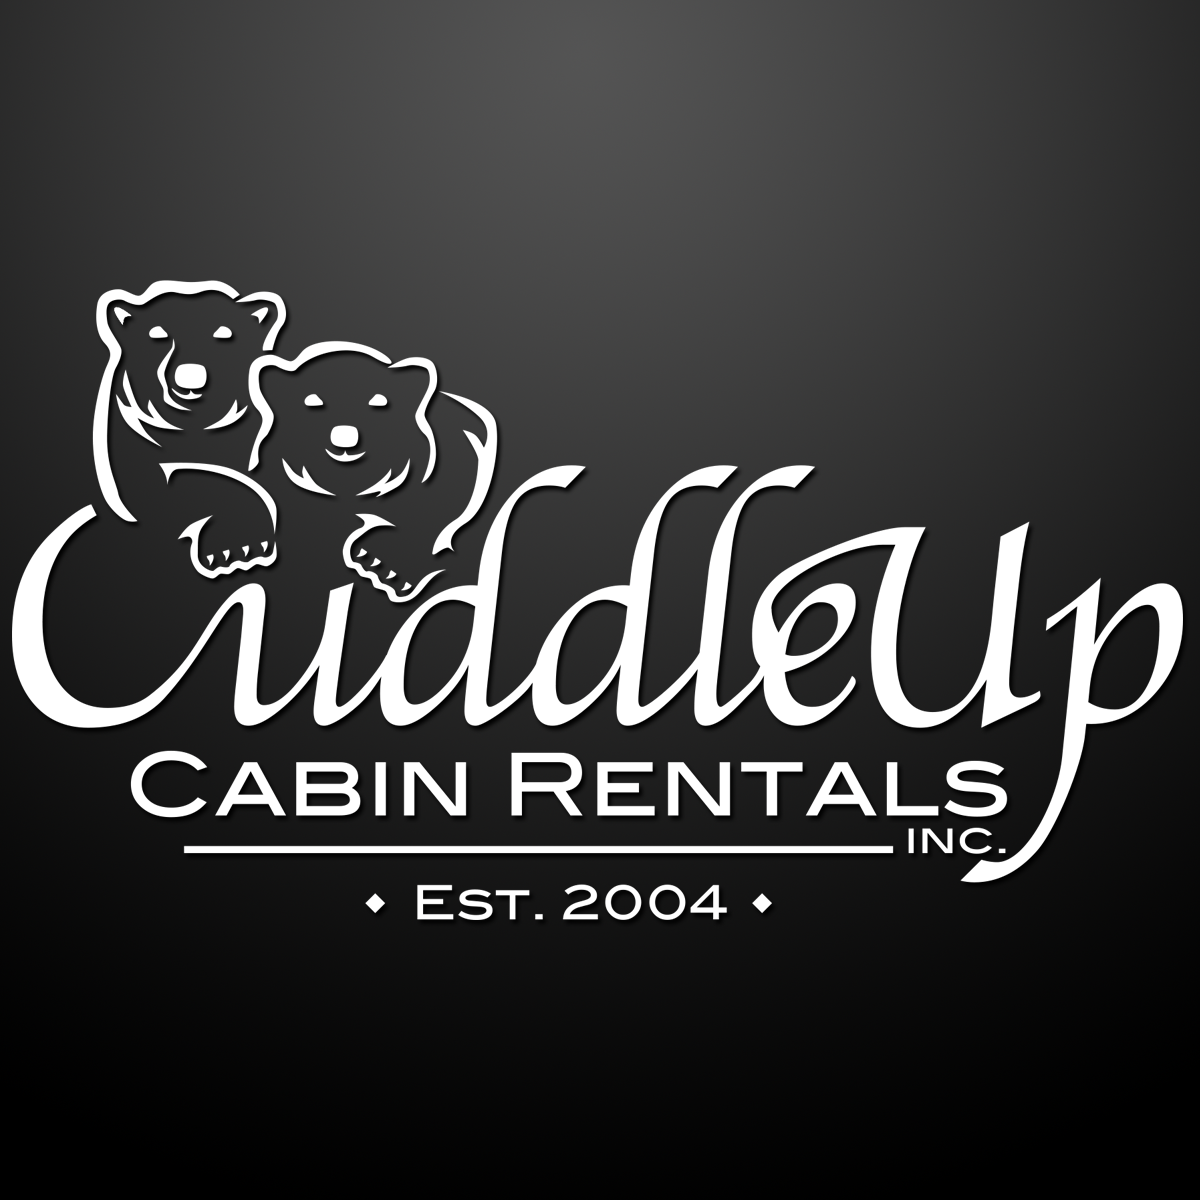 (c) Cuddleupcabinrentals.com